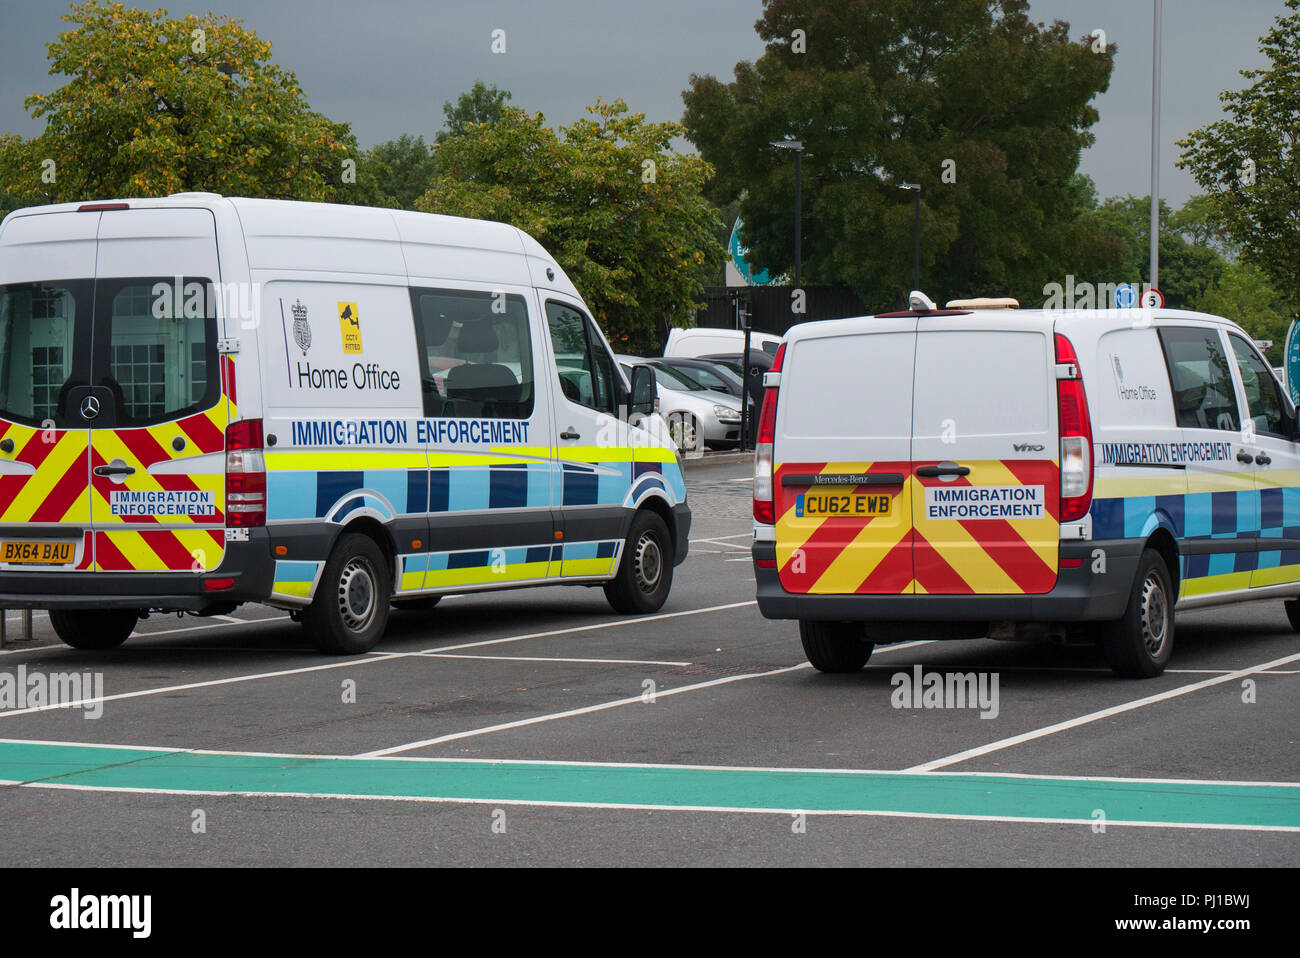 Einwanderung Durchsetzung Fahrzeuge auf einem Parkplatz geparkt, Greater Manchester, England, UK. Stockfoto